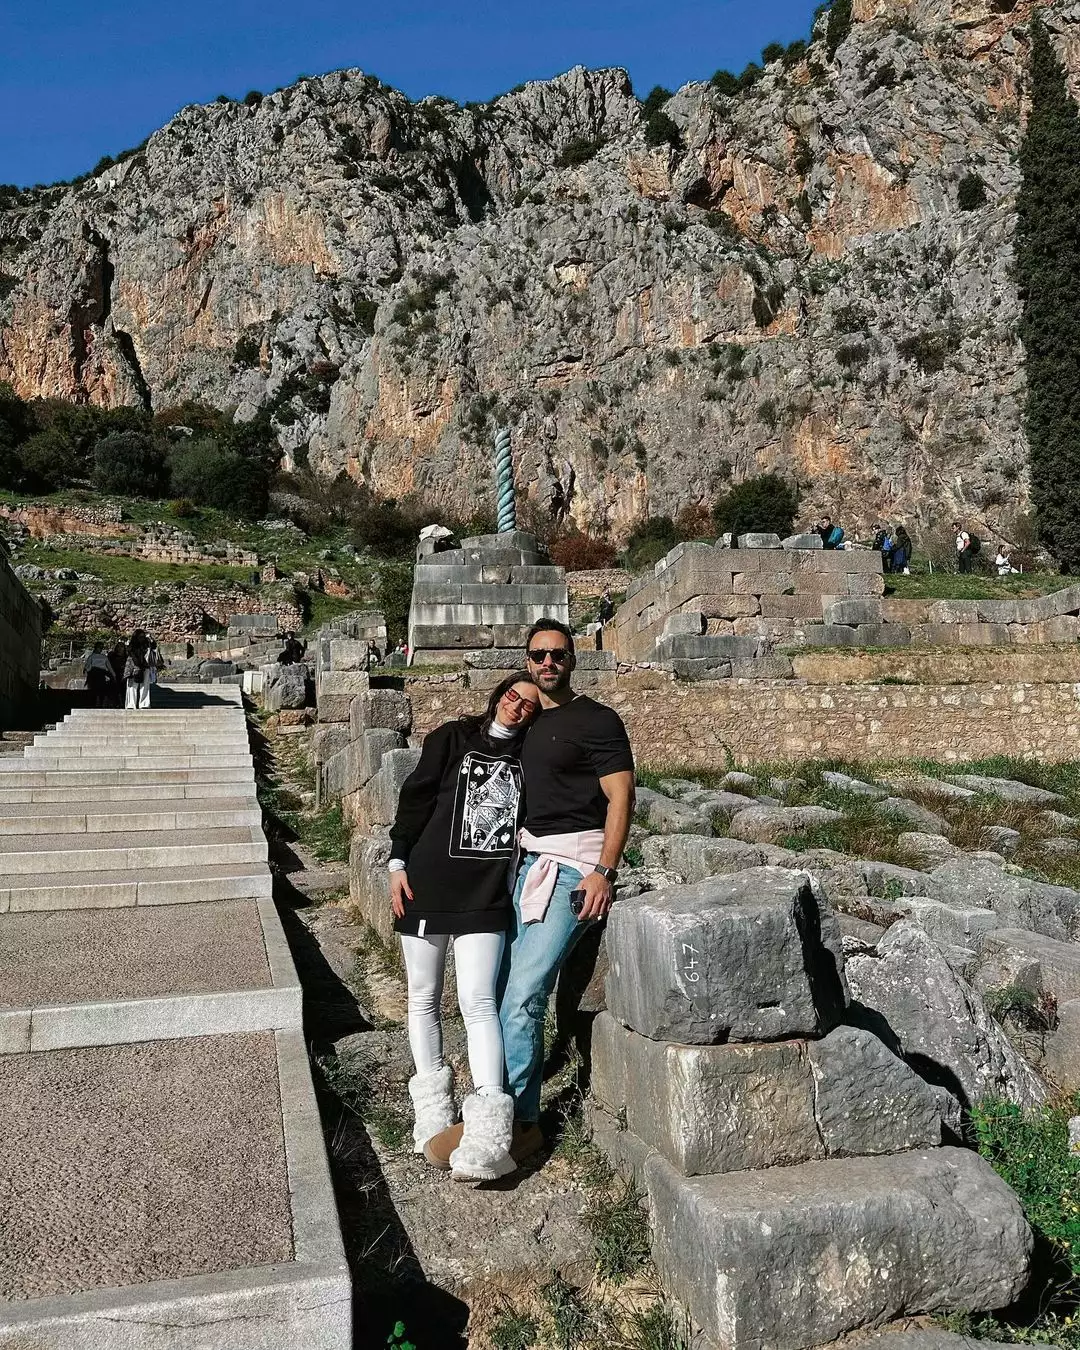 Σάκης Τανιμανίδης – Χριστίνα Μπόμπα: Αγκαλιά με τις δίδυμες κόρες τους μπροστά στο τζάκι